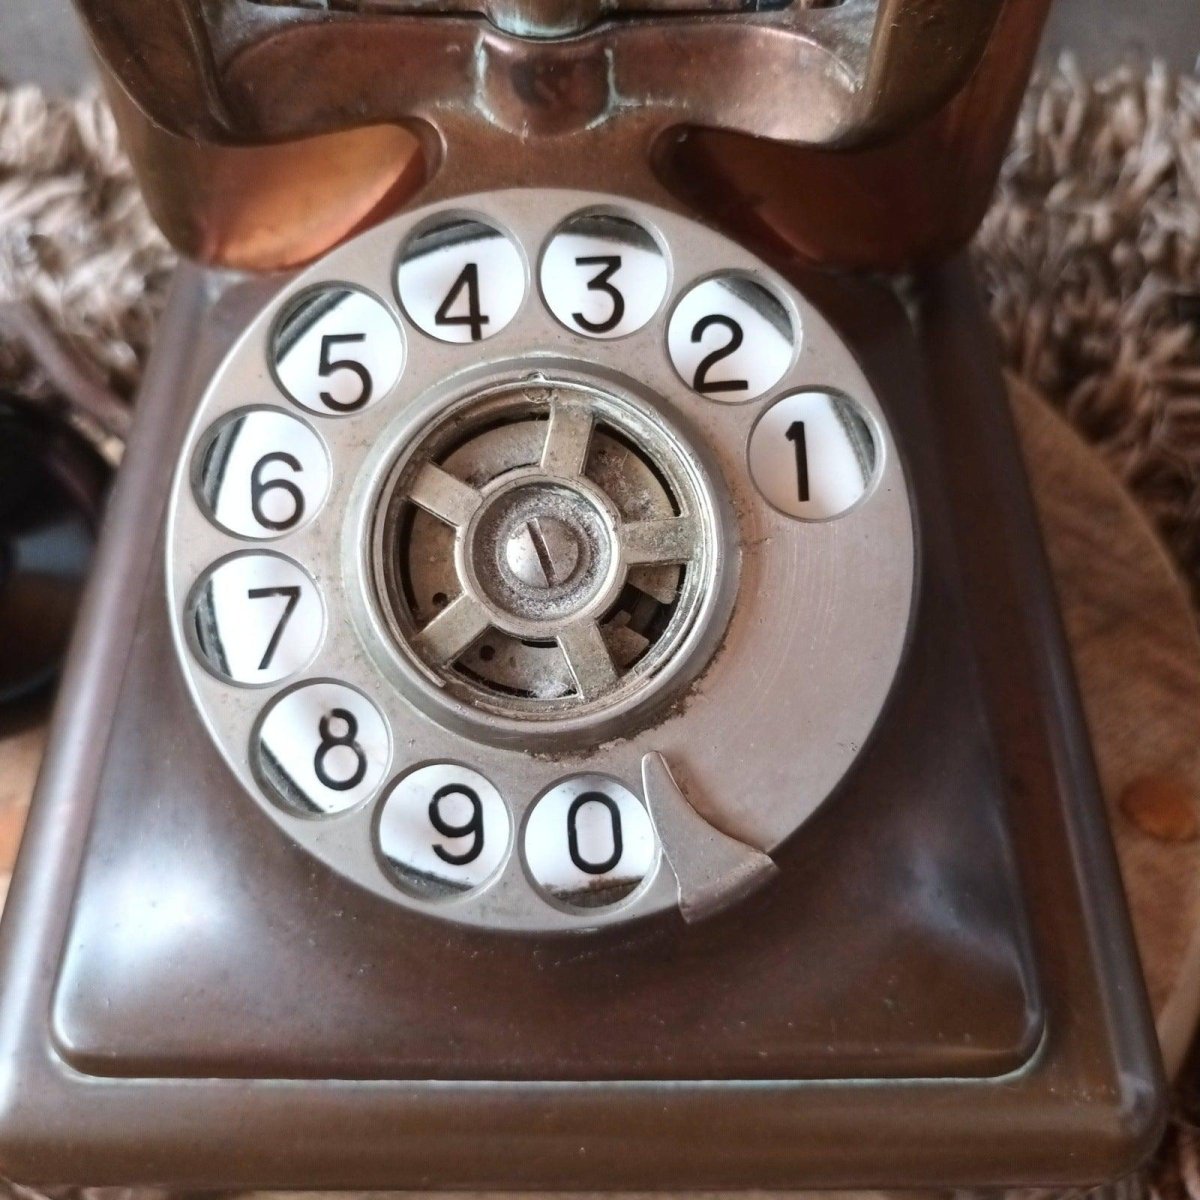 Vintage telefoon met dubbele bel. - Veilingcoach.be